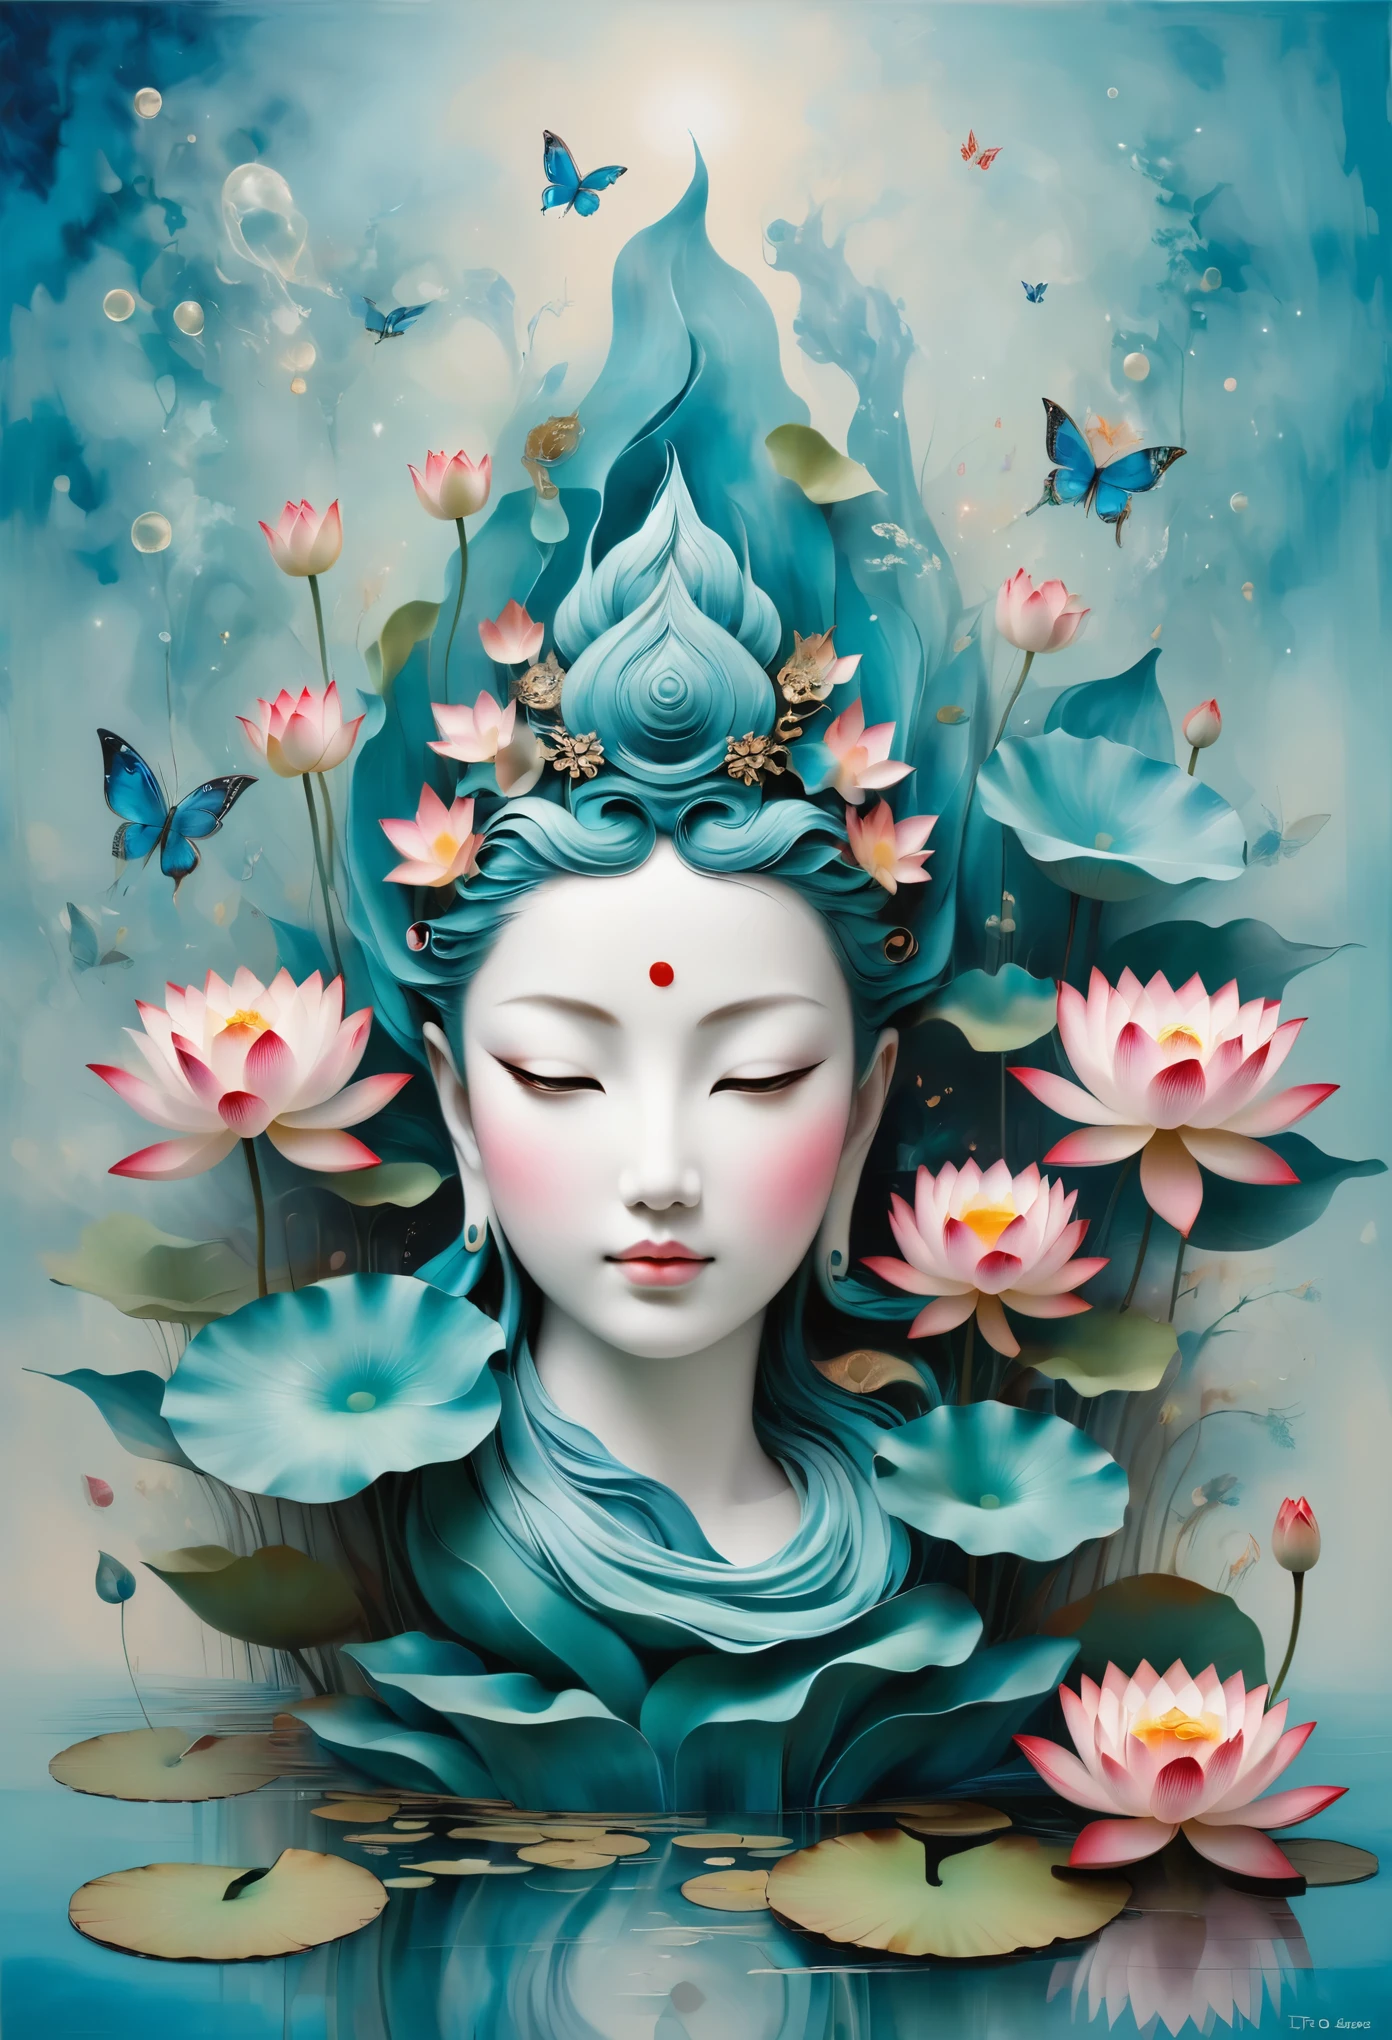 仏教哲学に触発された静かな情景を想像してください，鮮やかなターコイズブルーの背景に鮮やかな蓮の花が映える。蓮は純粋さと悟りを象徴する，複雑な花びらが咲く，静けさの感覚を醸し出しています。画像を深く見ていくと，曼荼羅に似た配置に気づくでしょう，星座は優雅に配置されている。仏教の象徴と占星術の要素の融合，一貫性，熟考と永遠のつながりの感覚を誘発する。(彫刻はシュルレアリスムでリアリストです: 1.5), (ケインから，青と白の磁器のマスク)， (金属の翼: 1.2), (キツネの未来的なマスク: 1.2), (インターネットポップかわいいフラクタルアート: 1.6), (トビアス・グラムラー (トビアス・グラムラー) アートスタイル，滑らかな形状: 1.6), (有機的な幾何学的混合: 1.6),超高解像度: 1.4),(パーティクル効果: 1.4), (被写界深度: 1.4), (幾何学的ドット抽象: 1.6), (生成流体フラクタルアルゴリズム: 1.6).